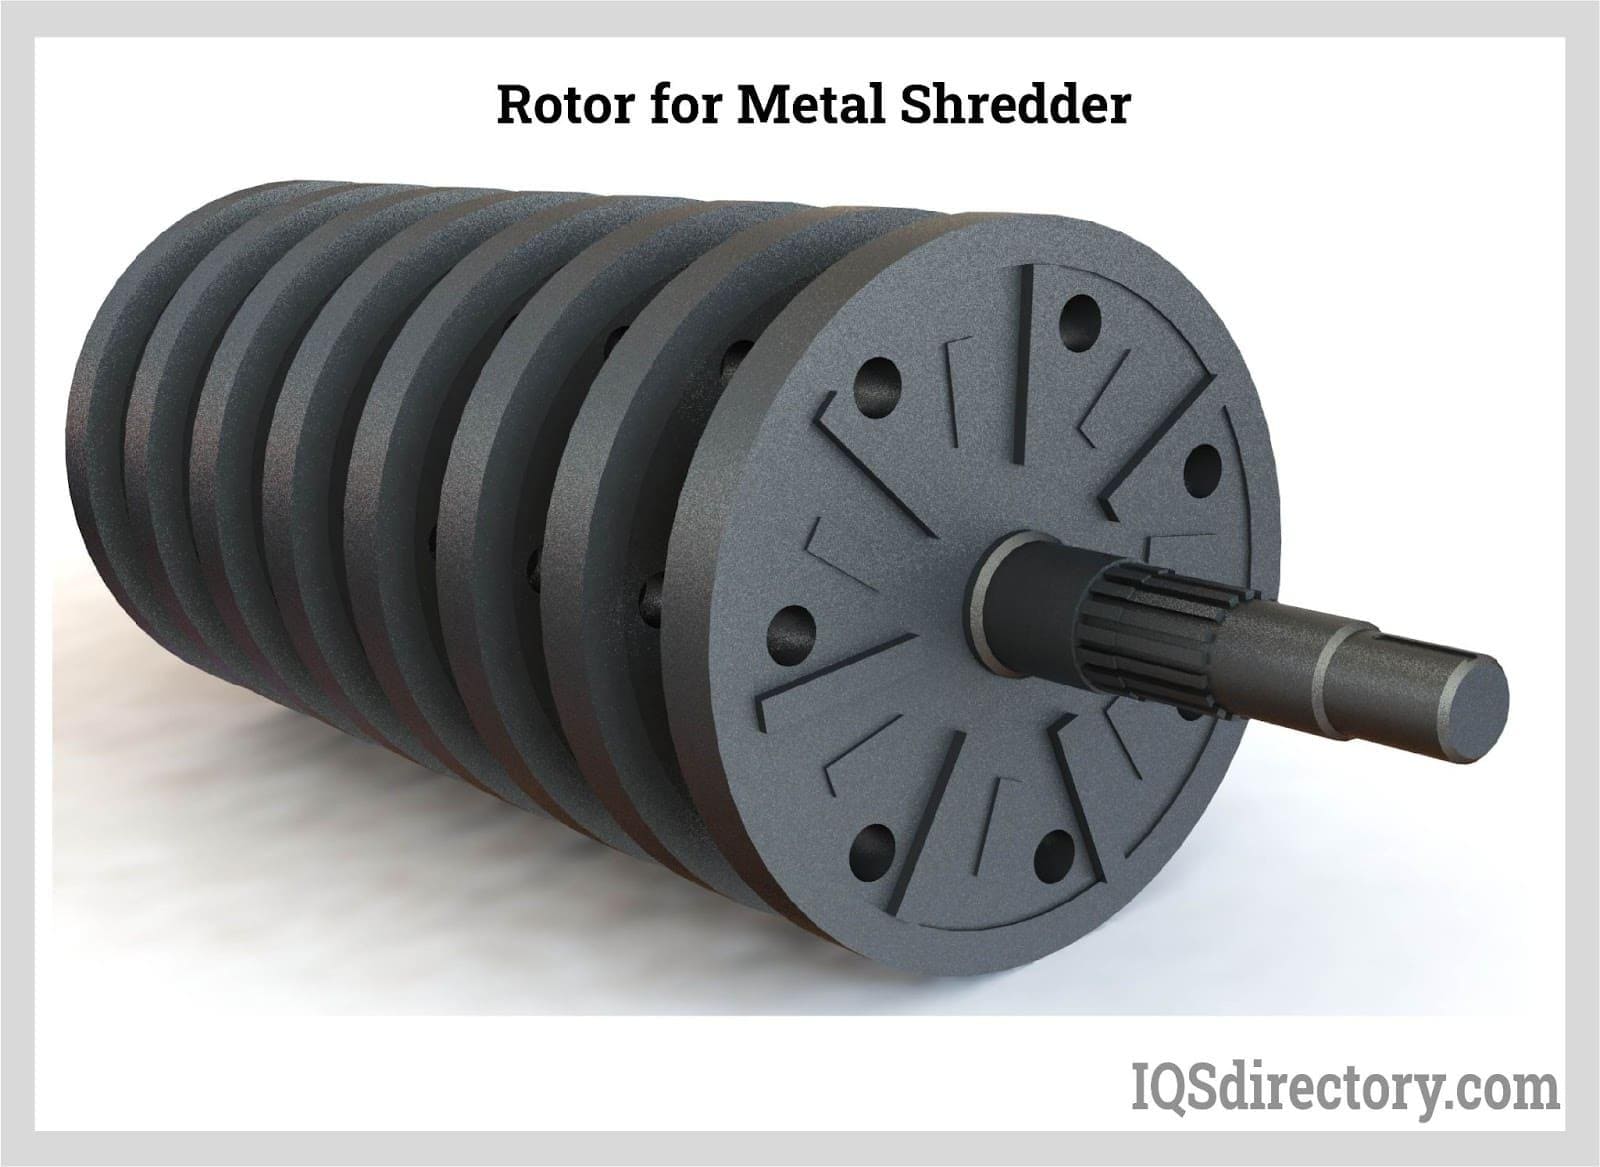 https://www.industrial-shredders.com/wp-content/uploads/2023/01/rotor-for-metal-shredder.jpg